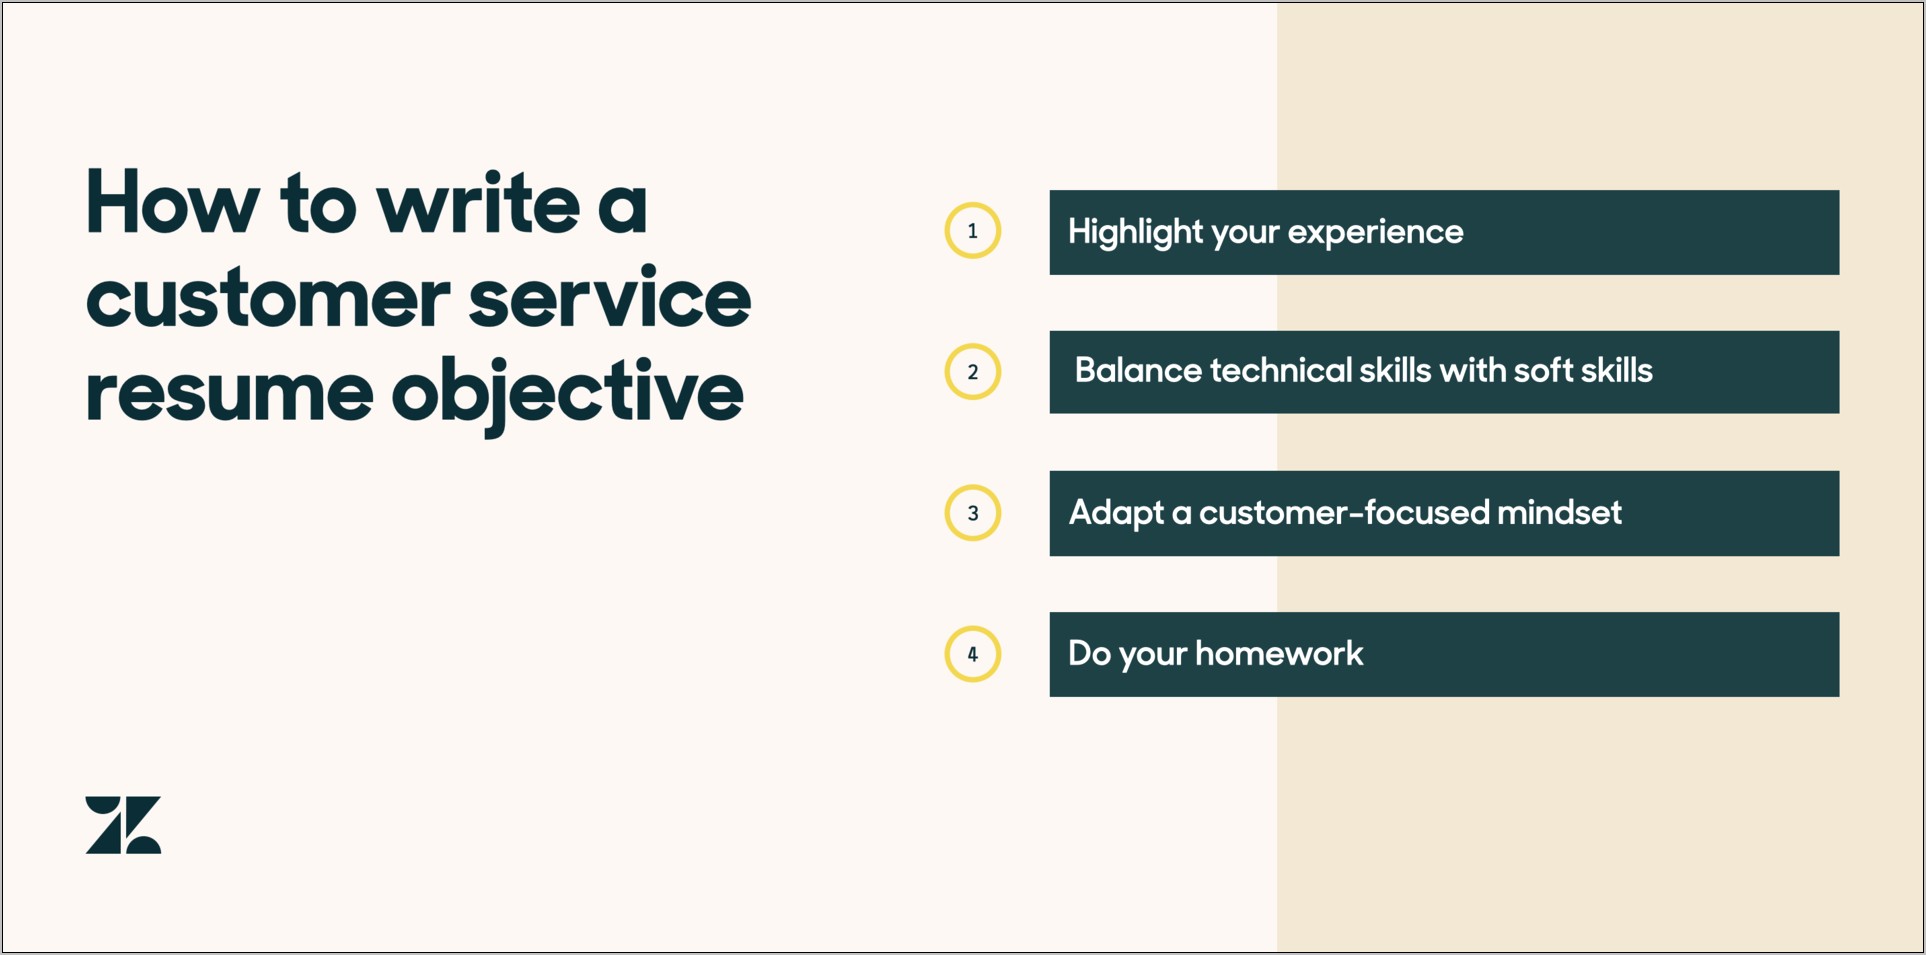 Sample Resume For Customer Service Representative In Restaurant